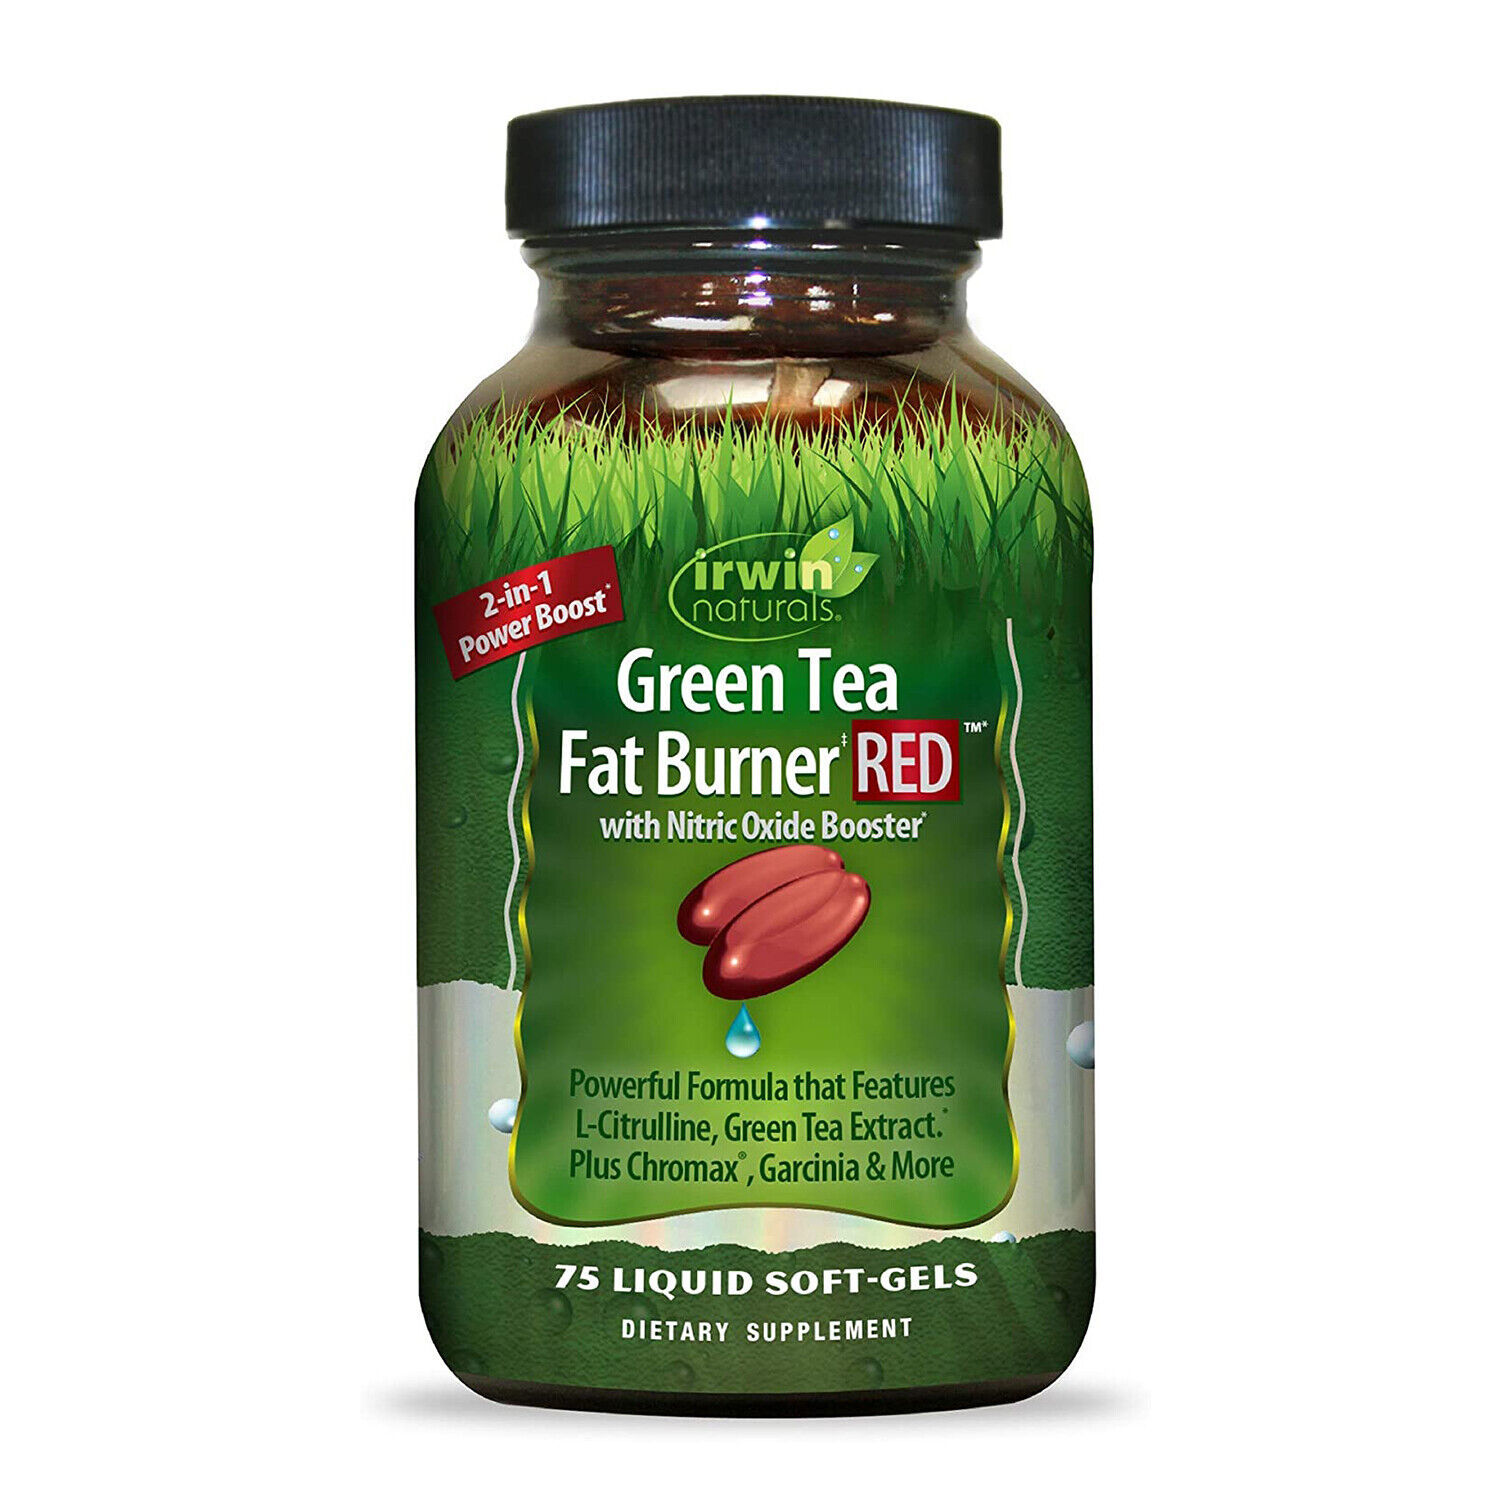 Irwin Naturals Green Tea Fat Burner RED, 75 Liquid Softgels - $21.99